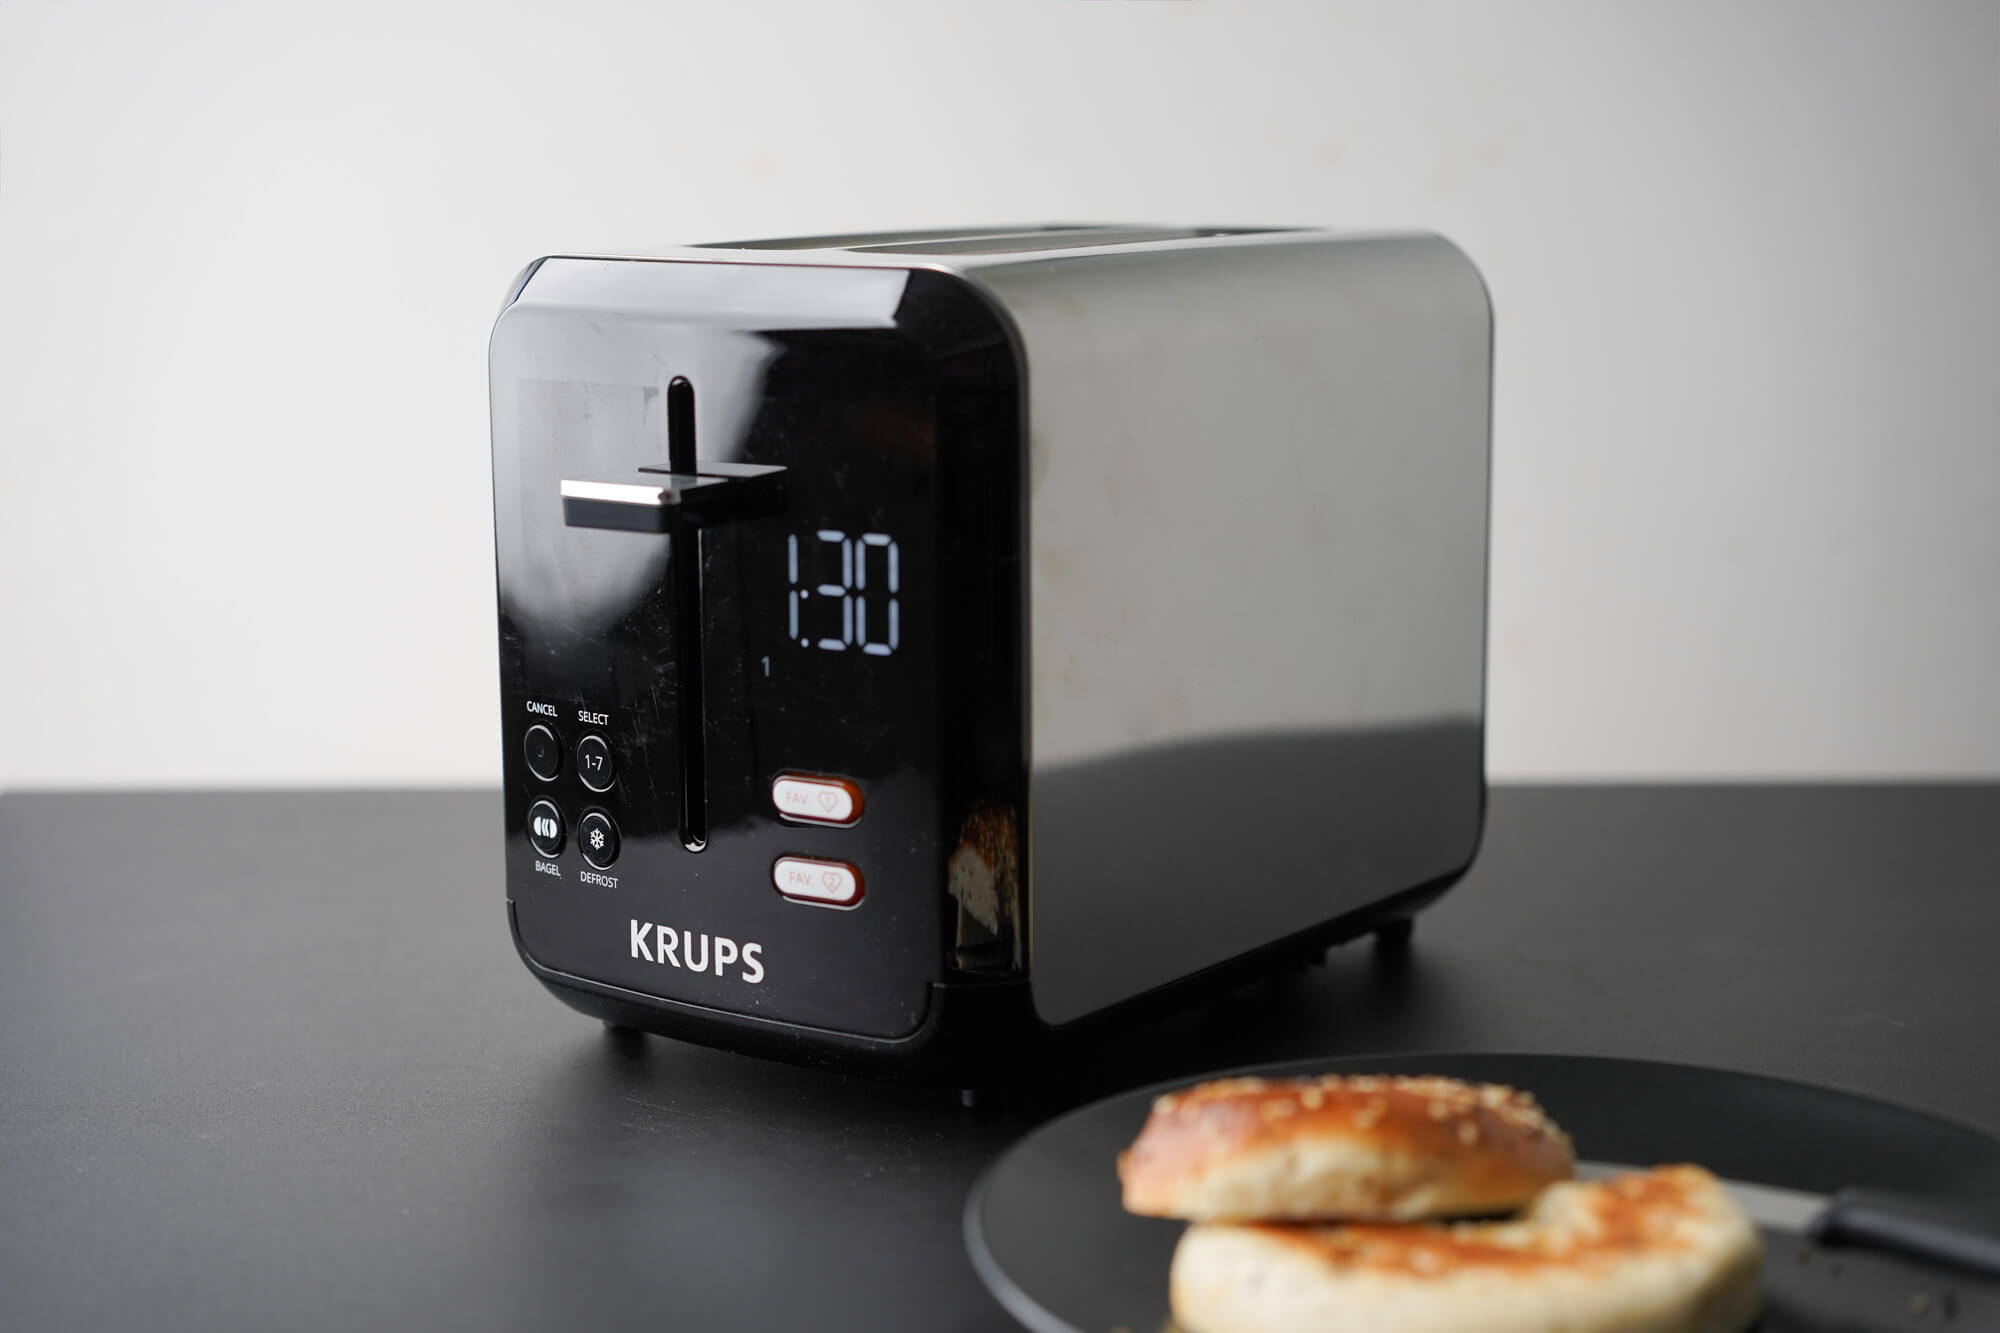 Krups - KH320D50 2 slice toaster